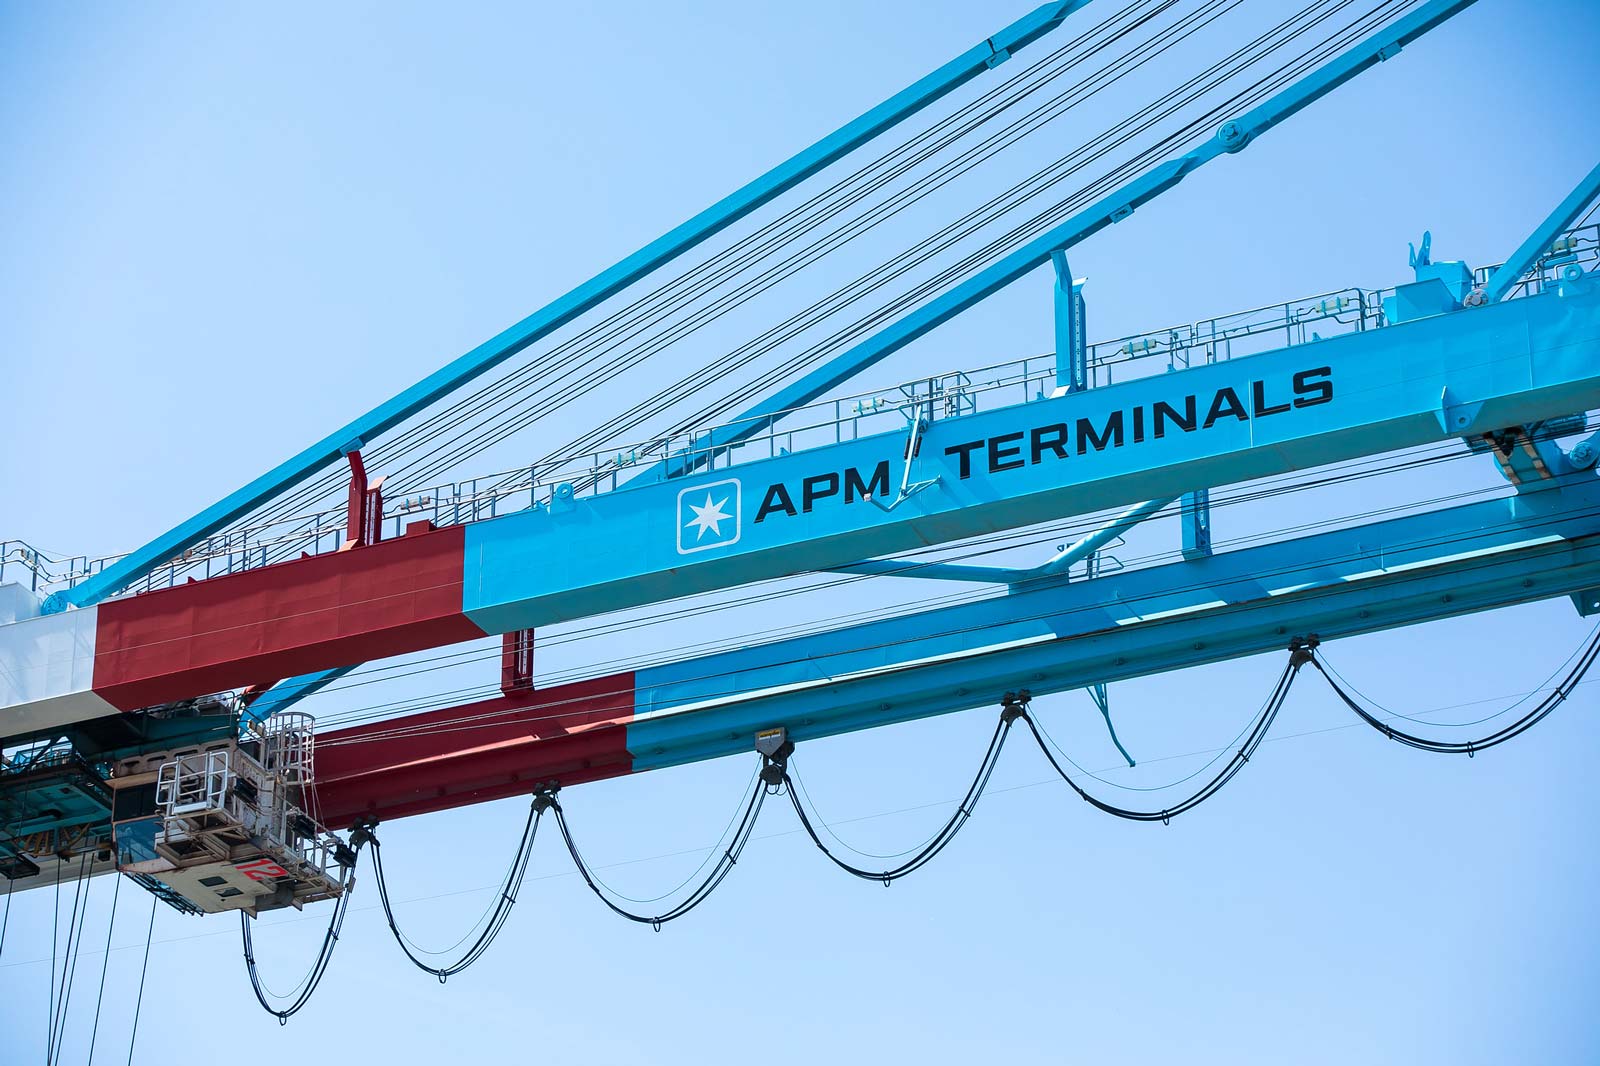 Plaquemines port and APM Terminals